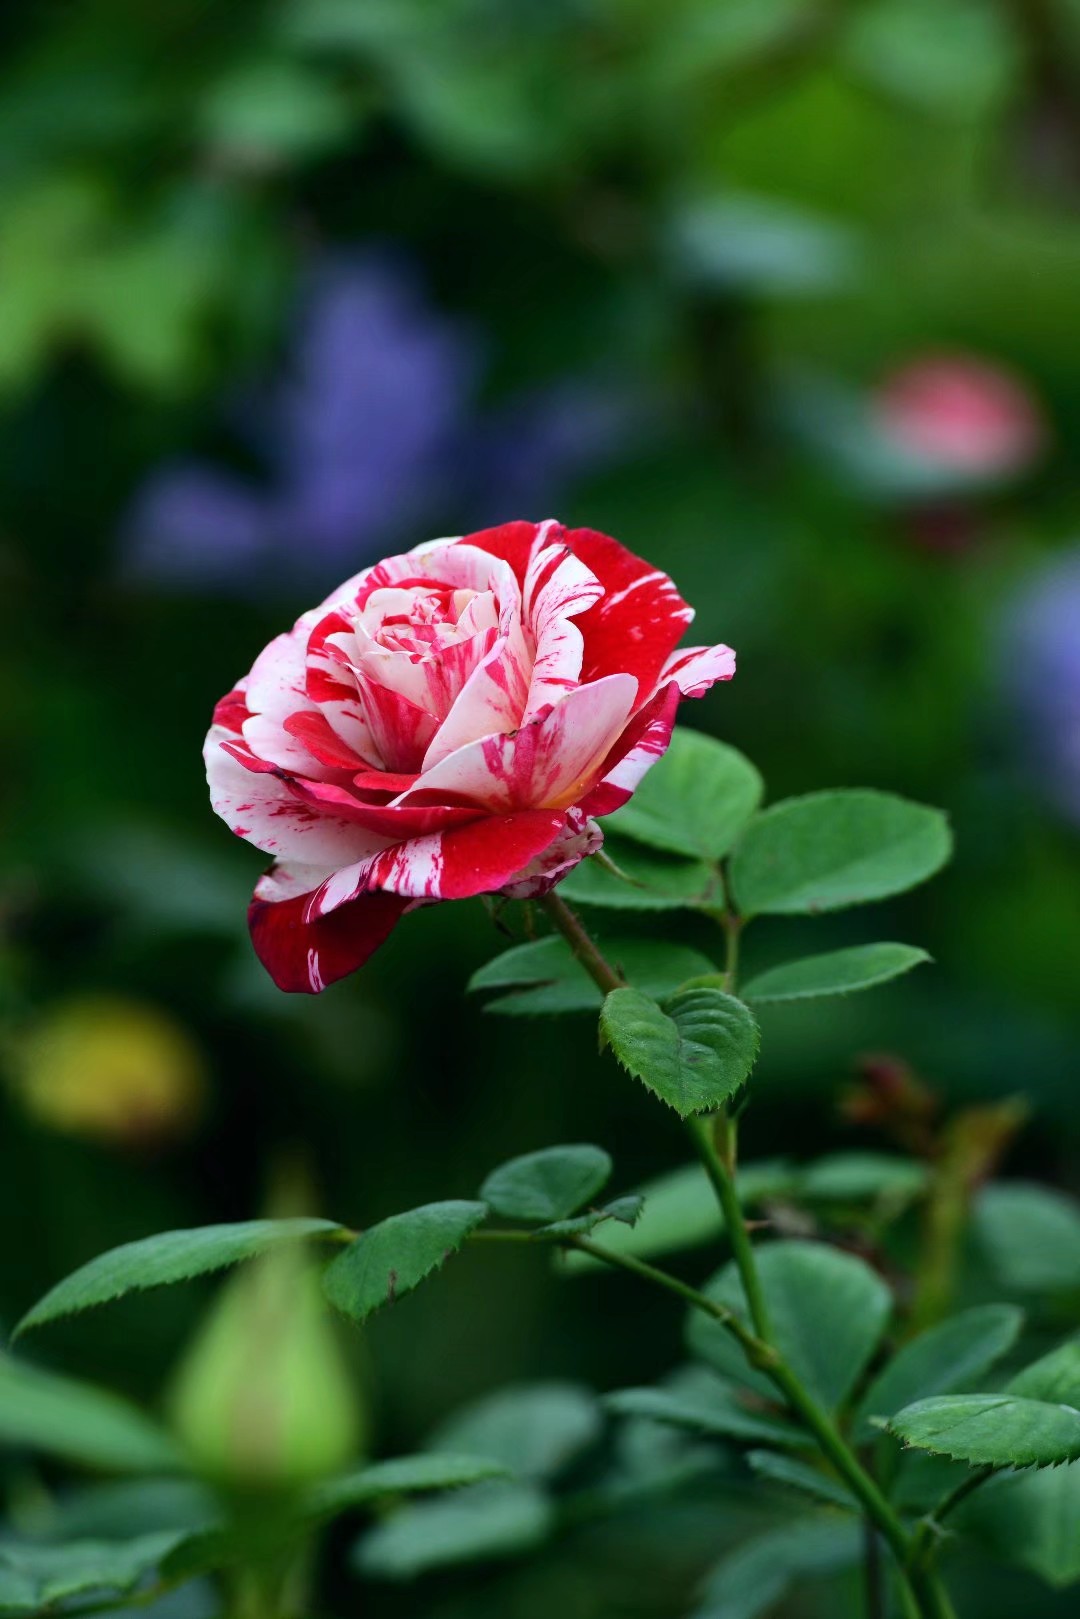 初夏的阳光爱抚下,向往一朵玫瑰花的爱情